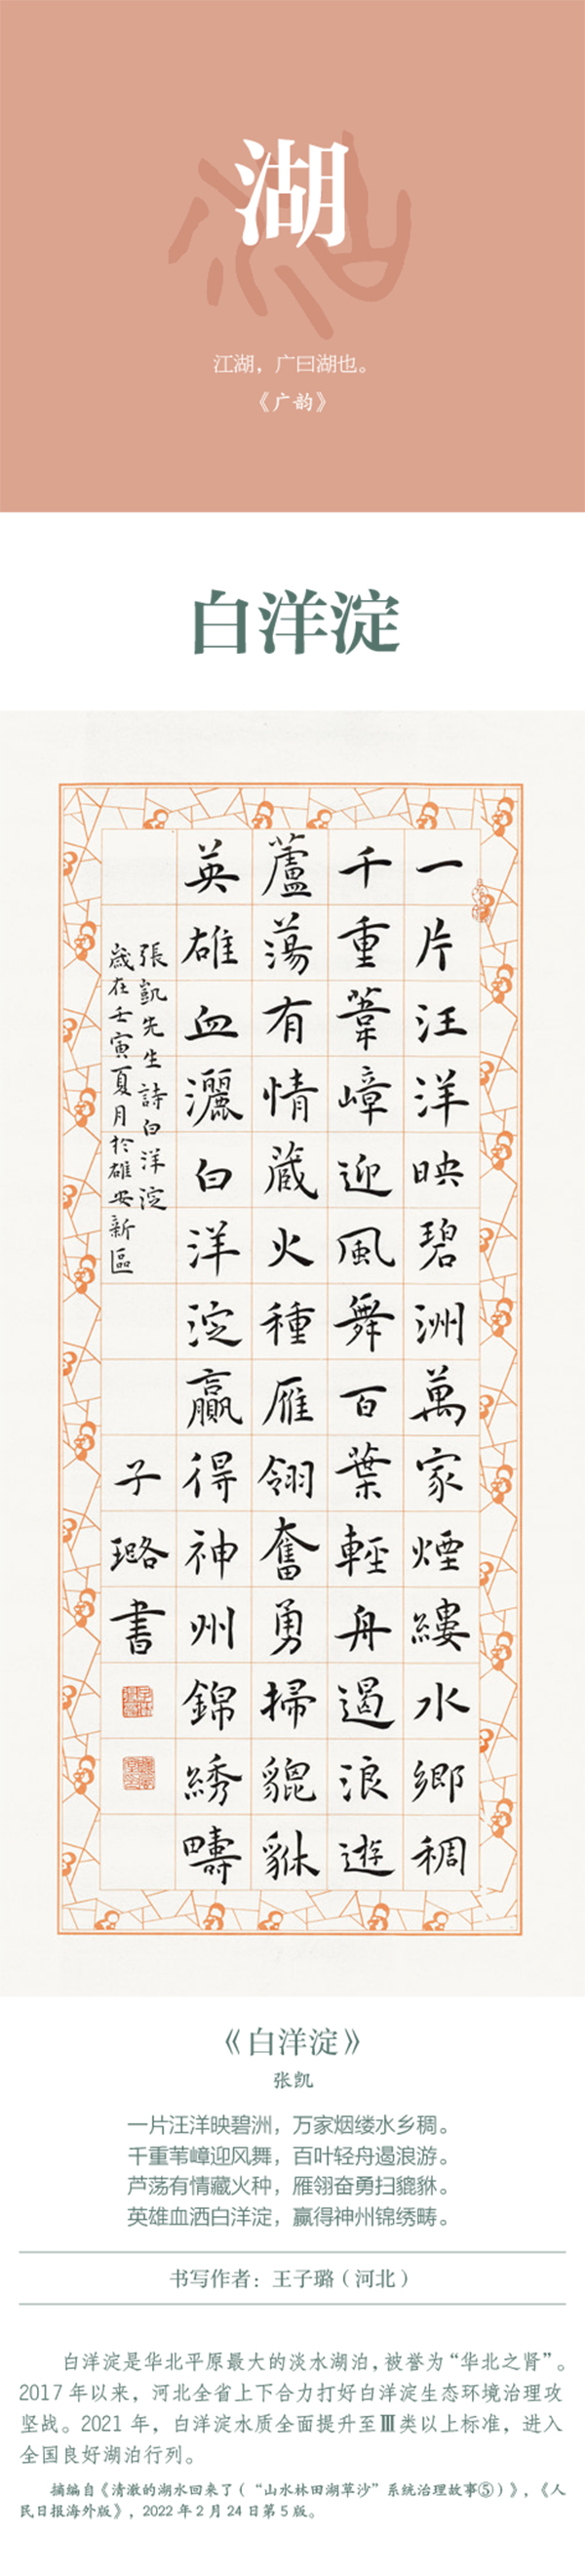 中國書協主題創作書法系列展——美麗中國插圖18題字網